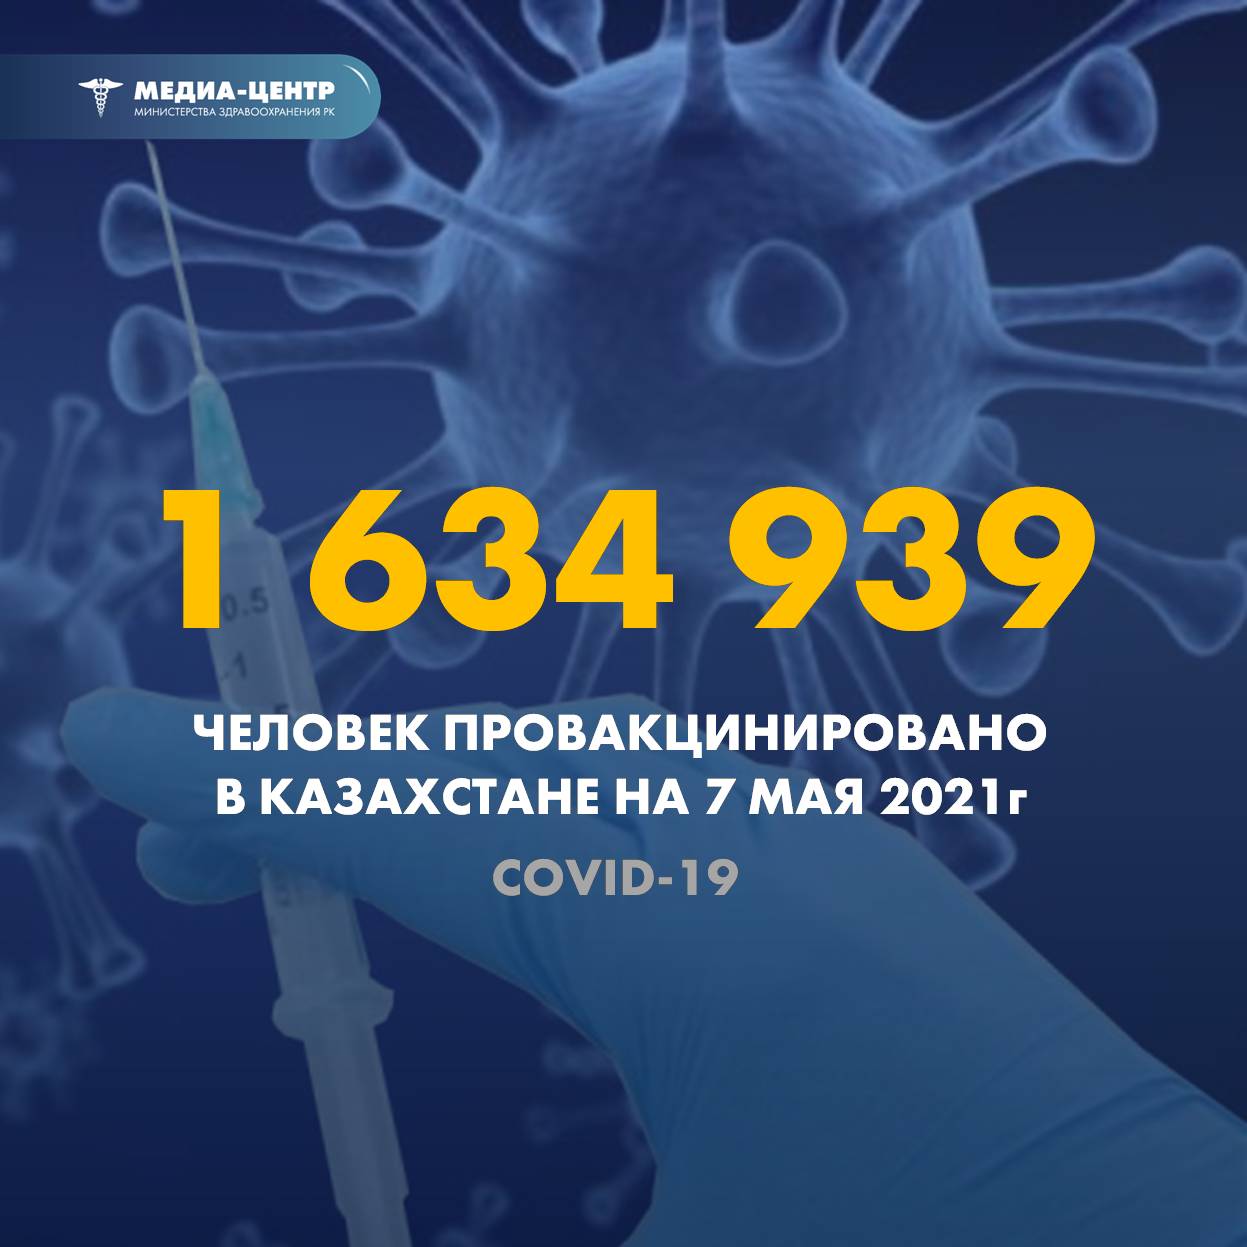 1 634 939 человек провакцинировано в Казахстане на 7 мая 2021 г